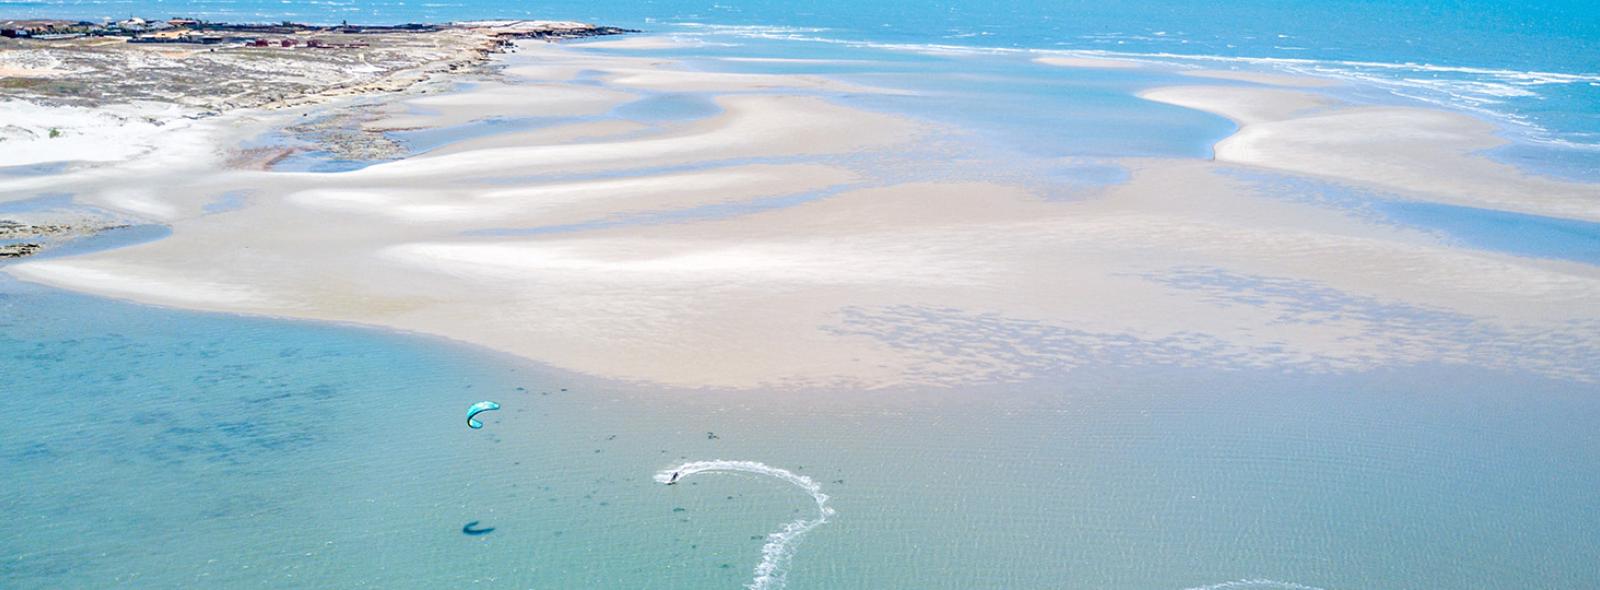 La lagon de Pontal de Maceio vue du ciel - un spot paradisiaque pour les kitesurfeurs